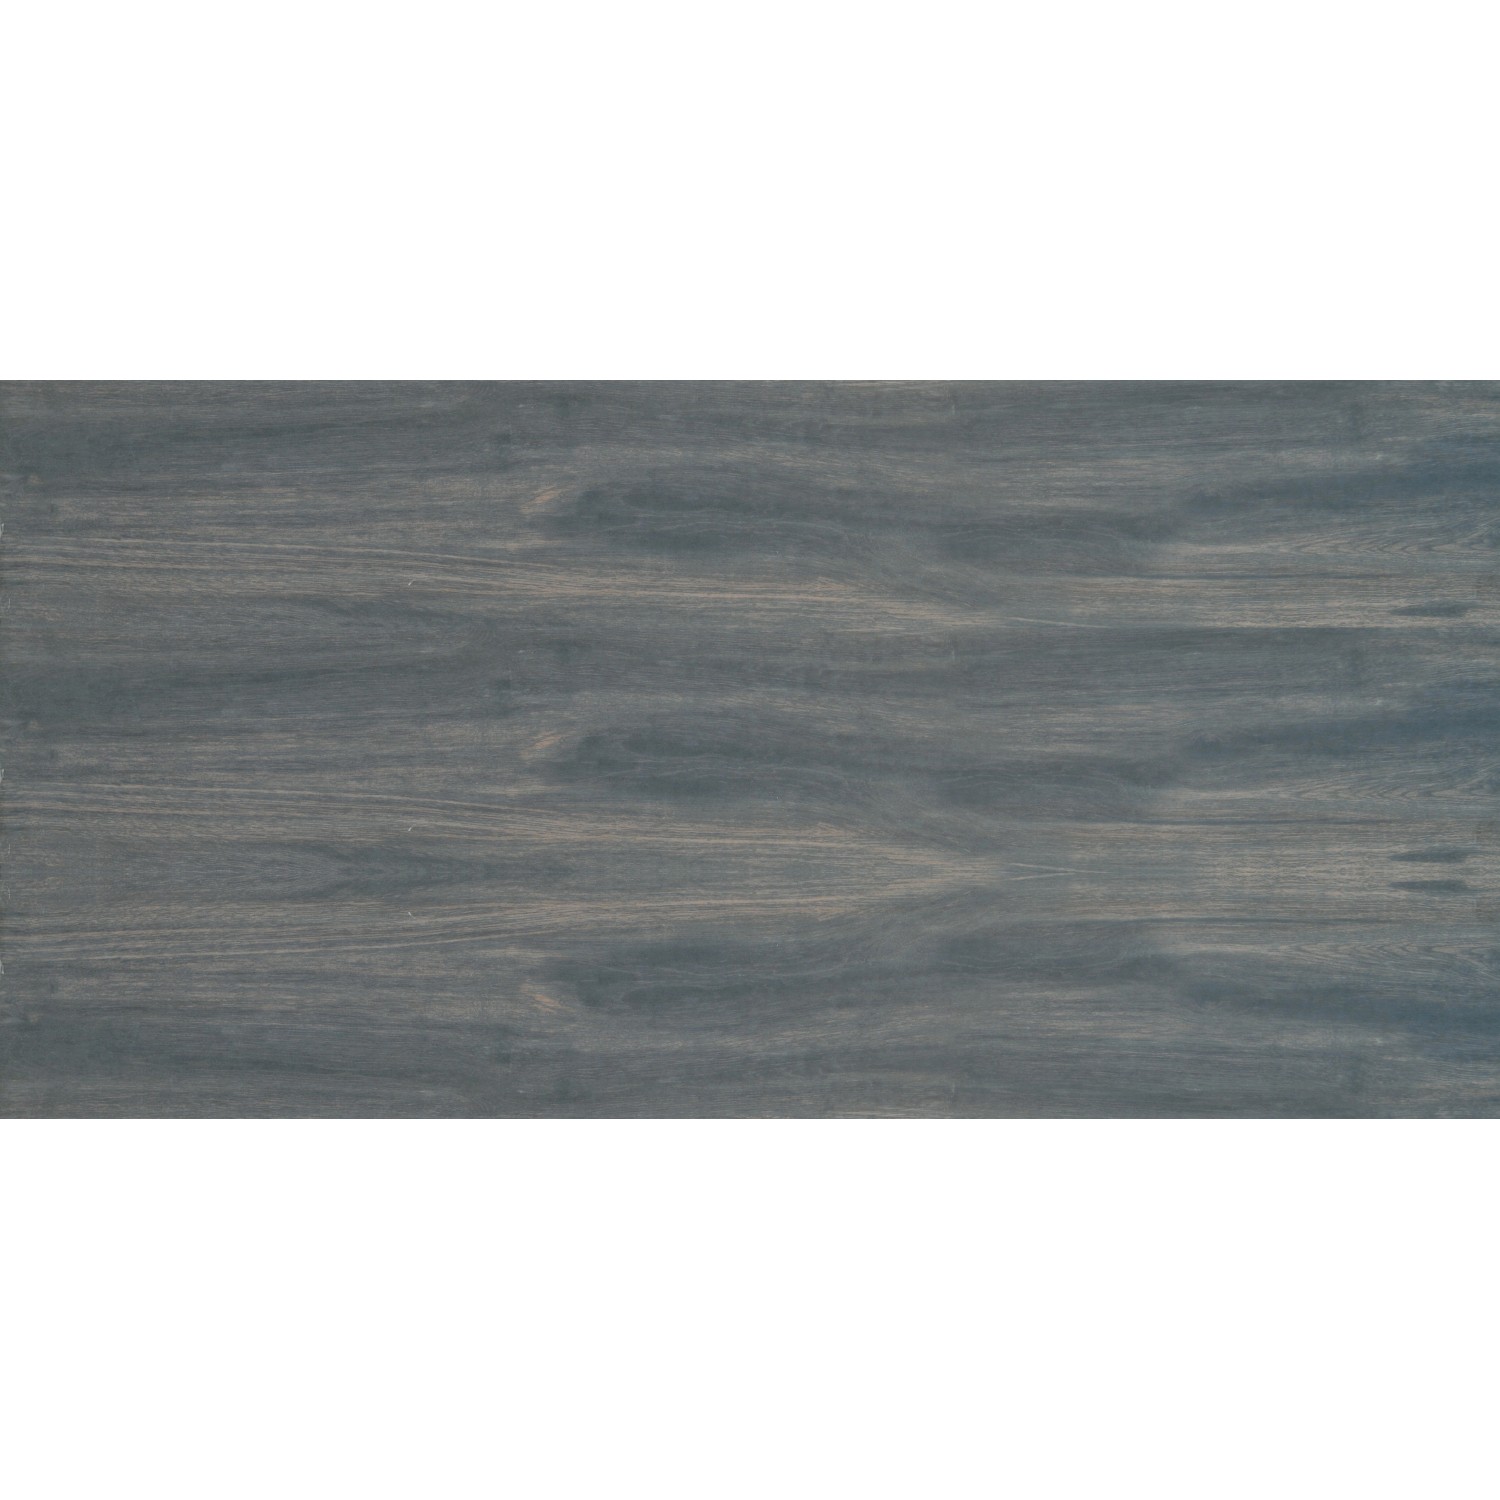 Terrassenplatte Feinsteinzeug Skagen Ebony glasiert matt 60 x 120 x 2 cm